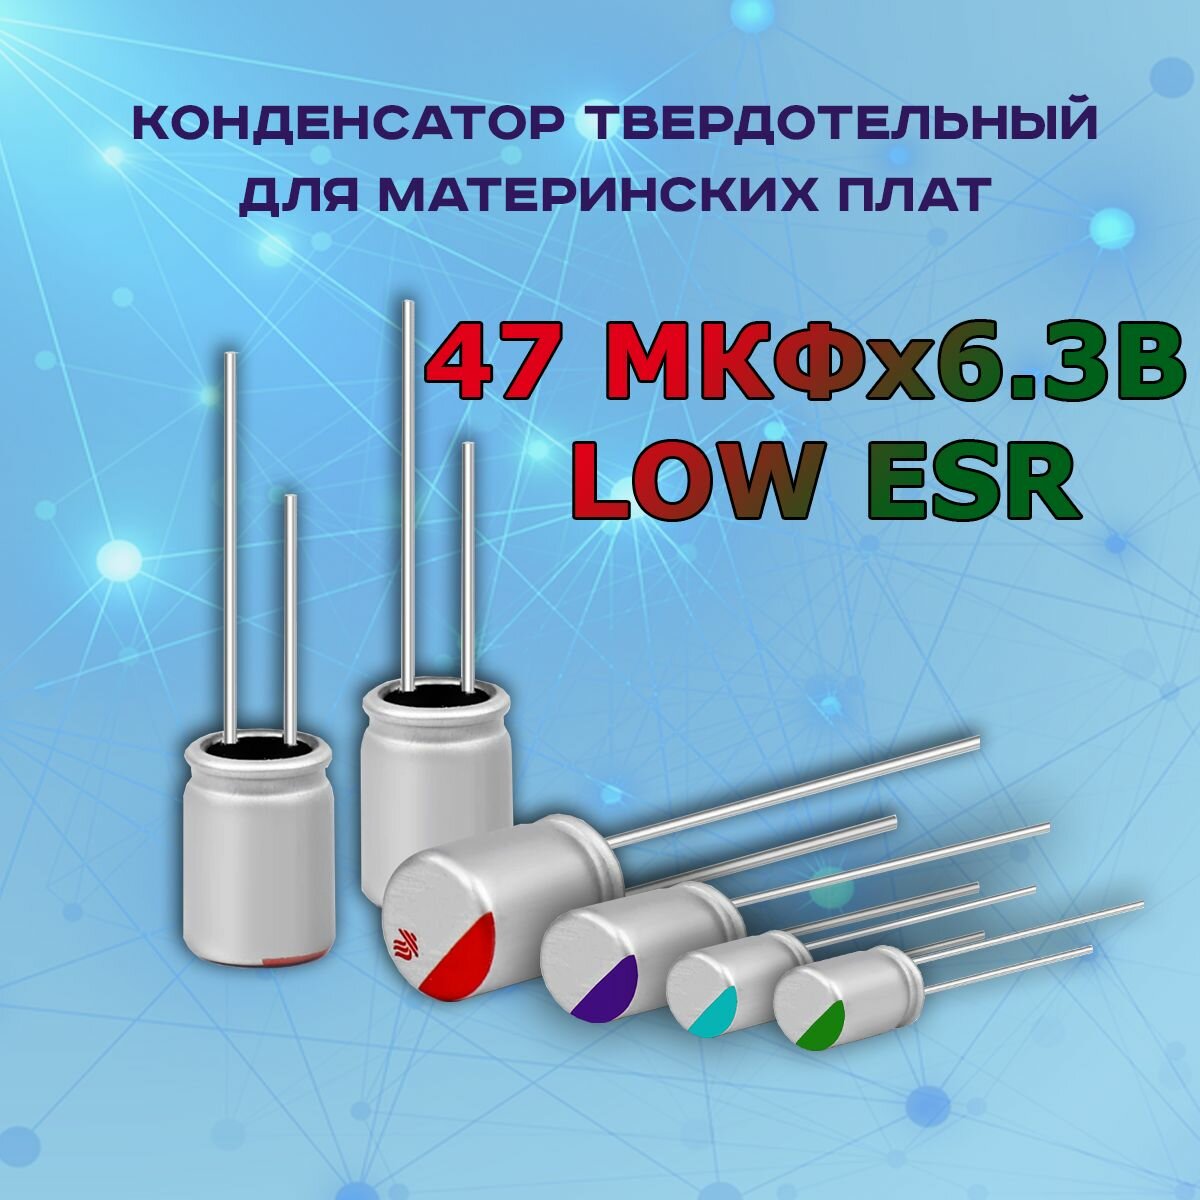 Конденсатор для материнской платы твердотельный 47 микрофарат 6.3 Вольт 47 МКФх6.3В LOW ESR - 1 шт.